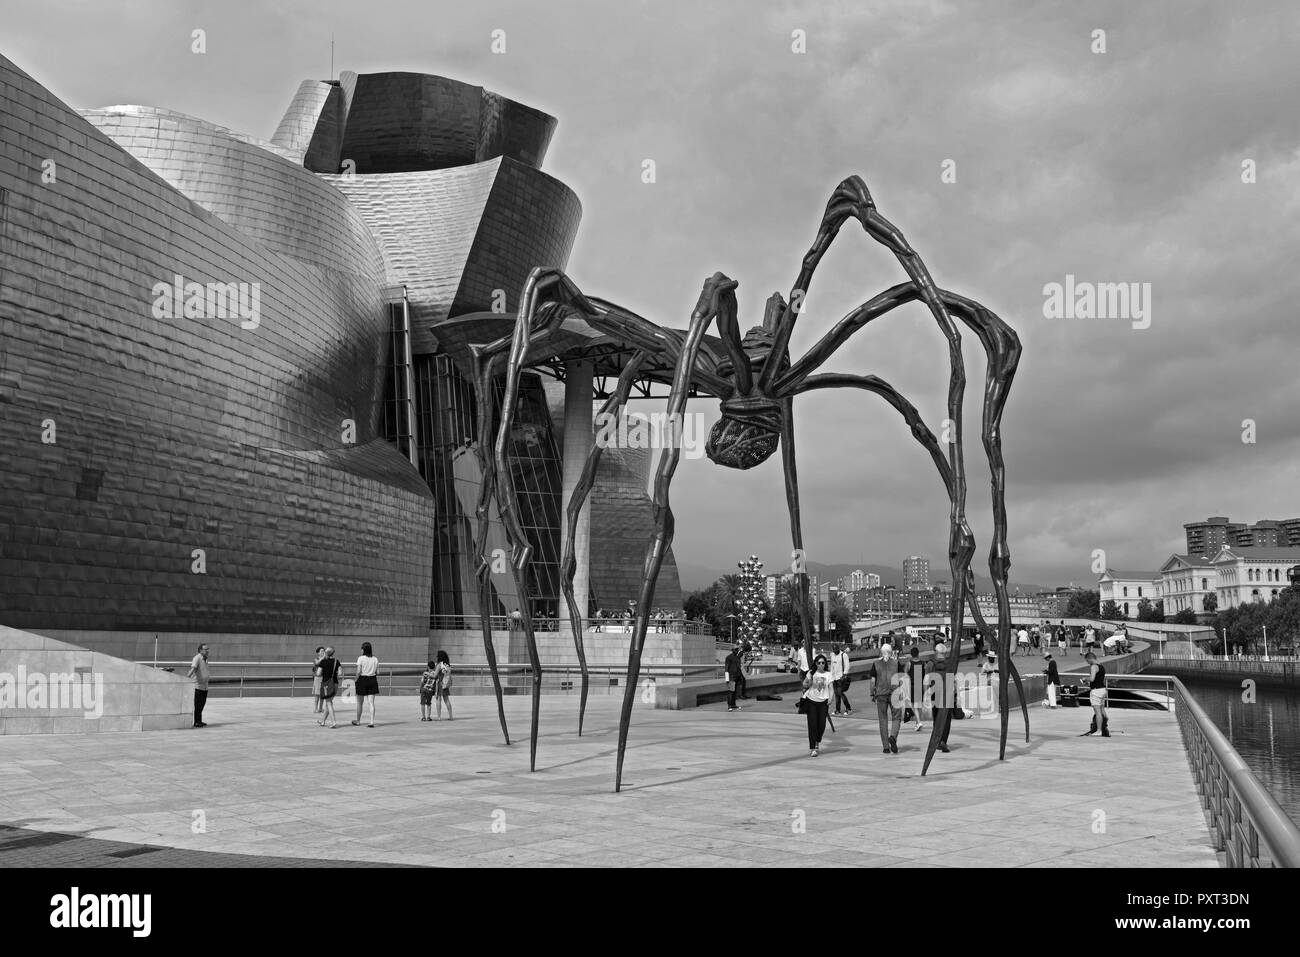 Vue sur le musée Guggenheim en noir et blanc, Bilbao, Pays Basque, Espagne. Banque D'Images